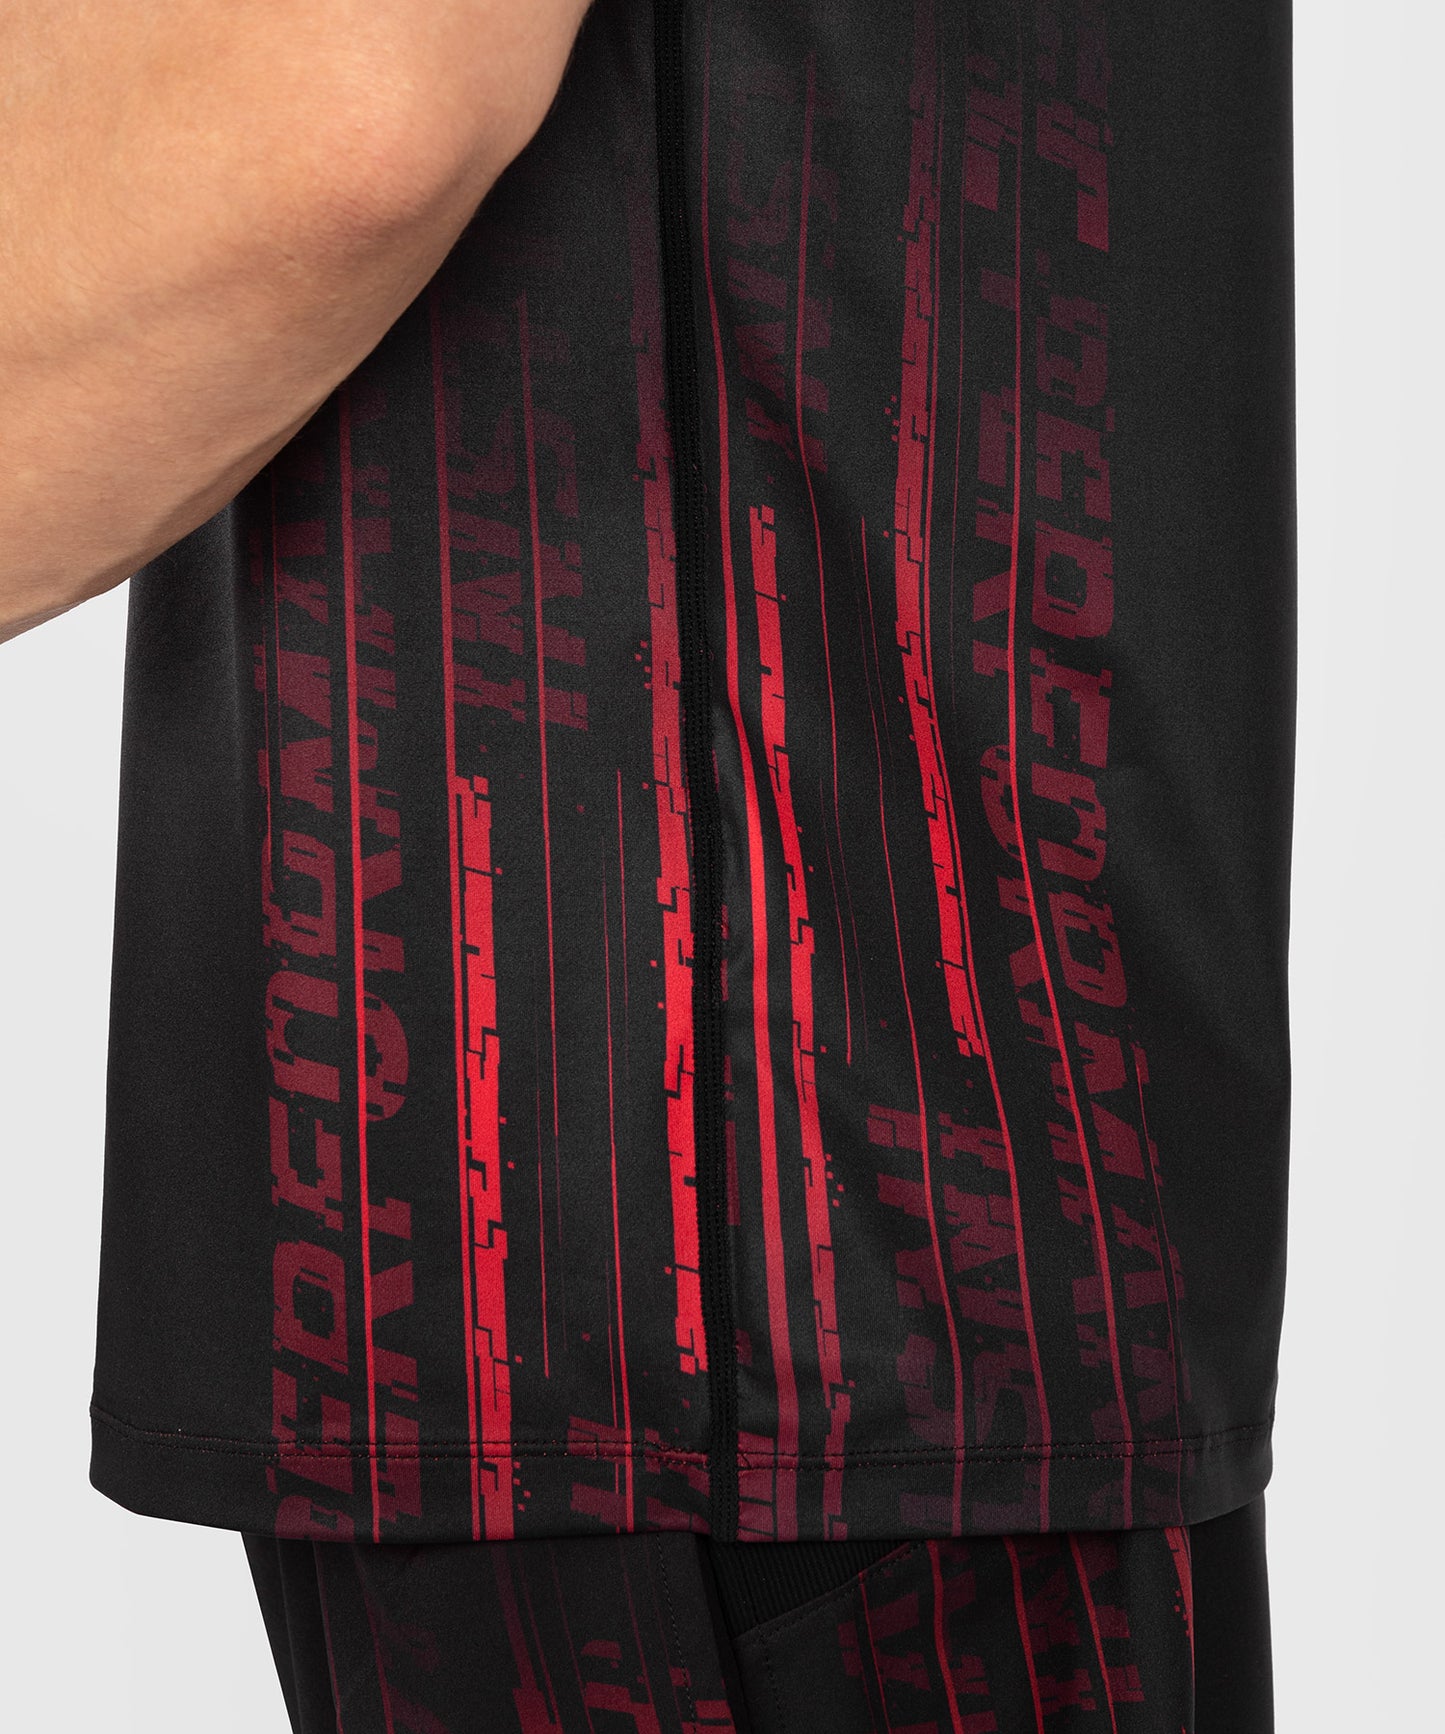 T-shirt Dry-Tech UFC Venum Performance Institute 2.0  - Noir/Rouge